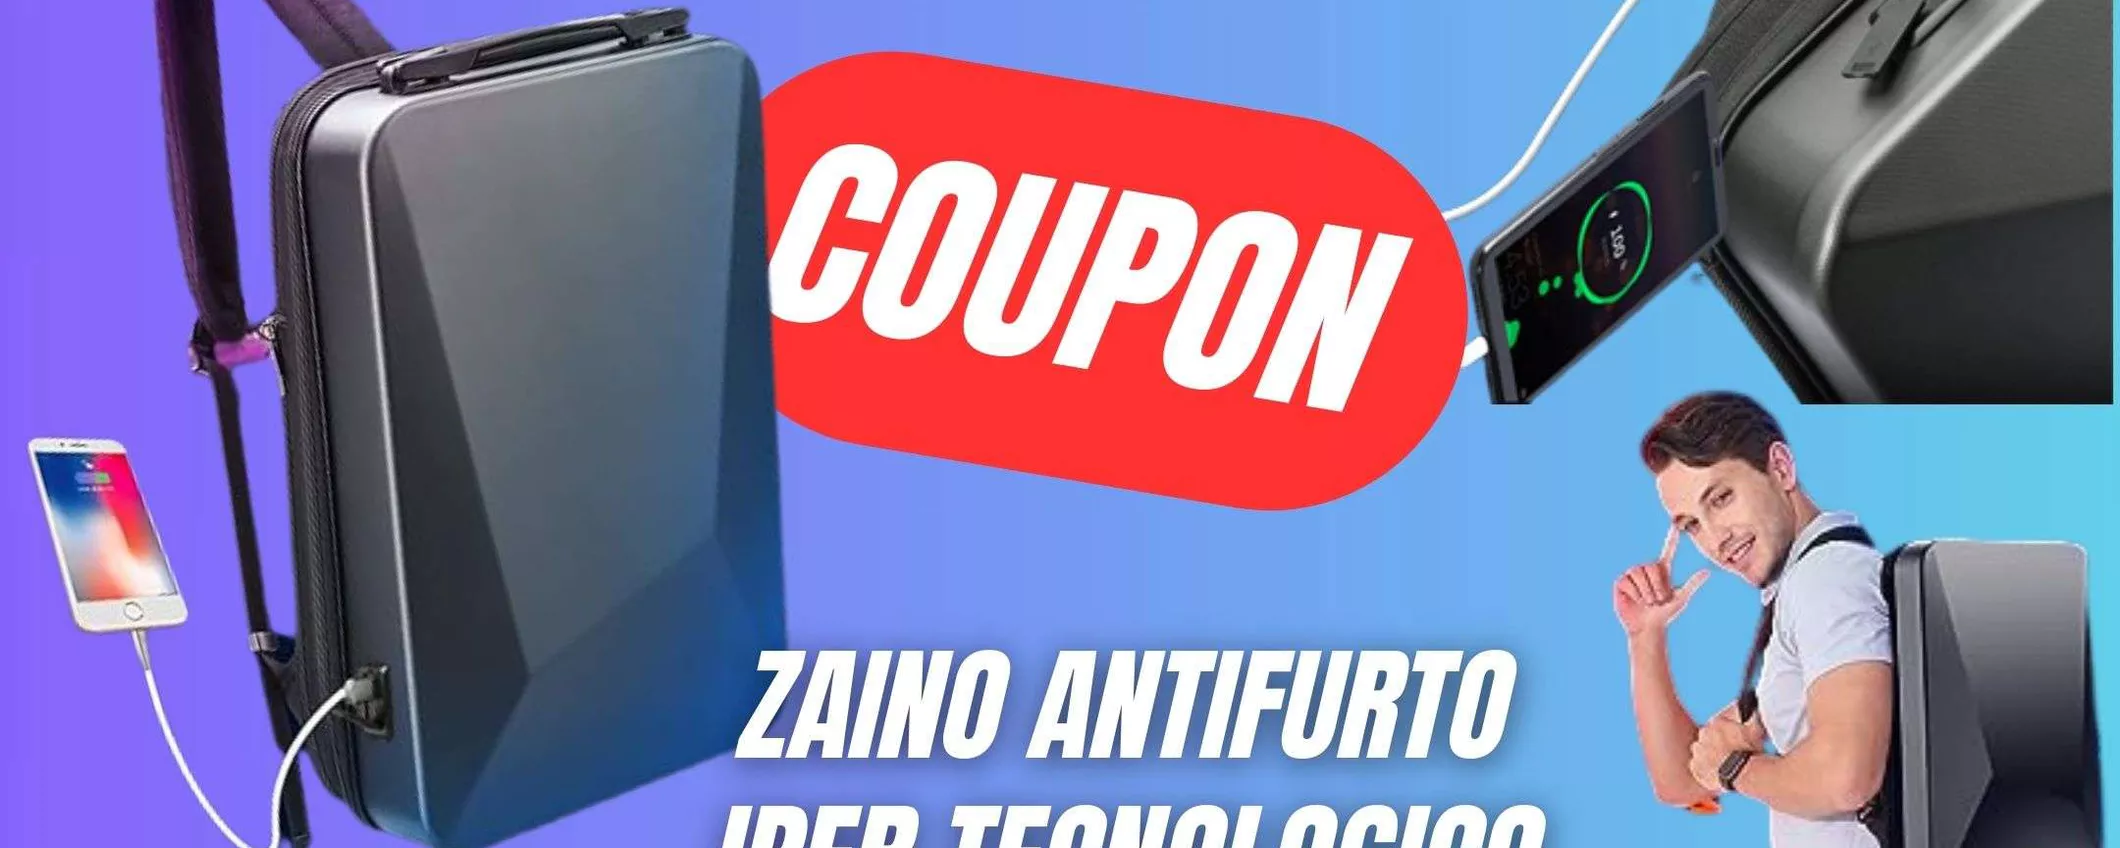 Lo Zaino antifurto e Iper Tecnologico CROLLA di prezzo grazie al COUPON ESLCUSIVO!